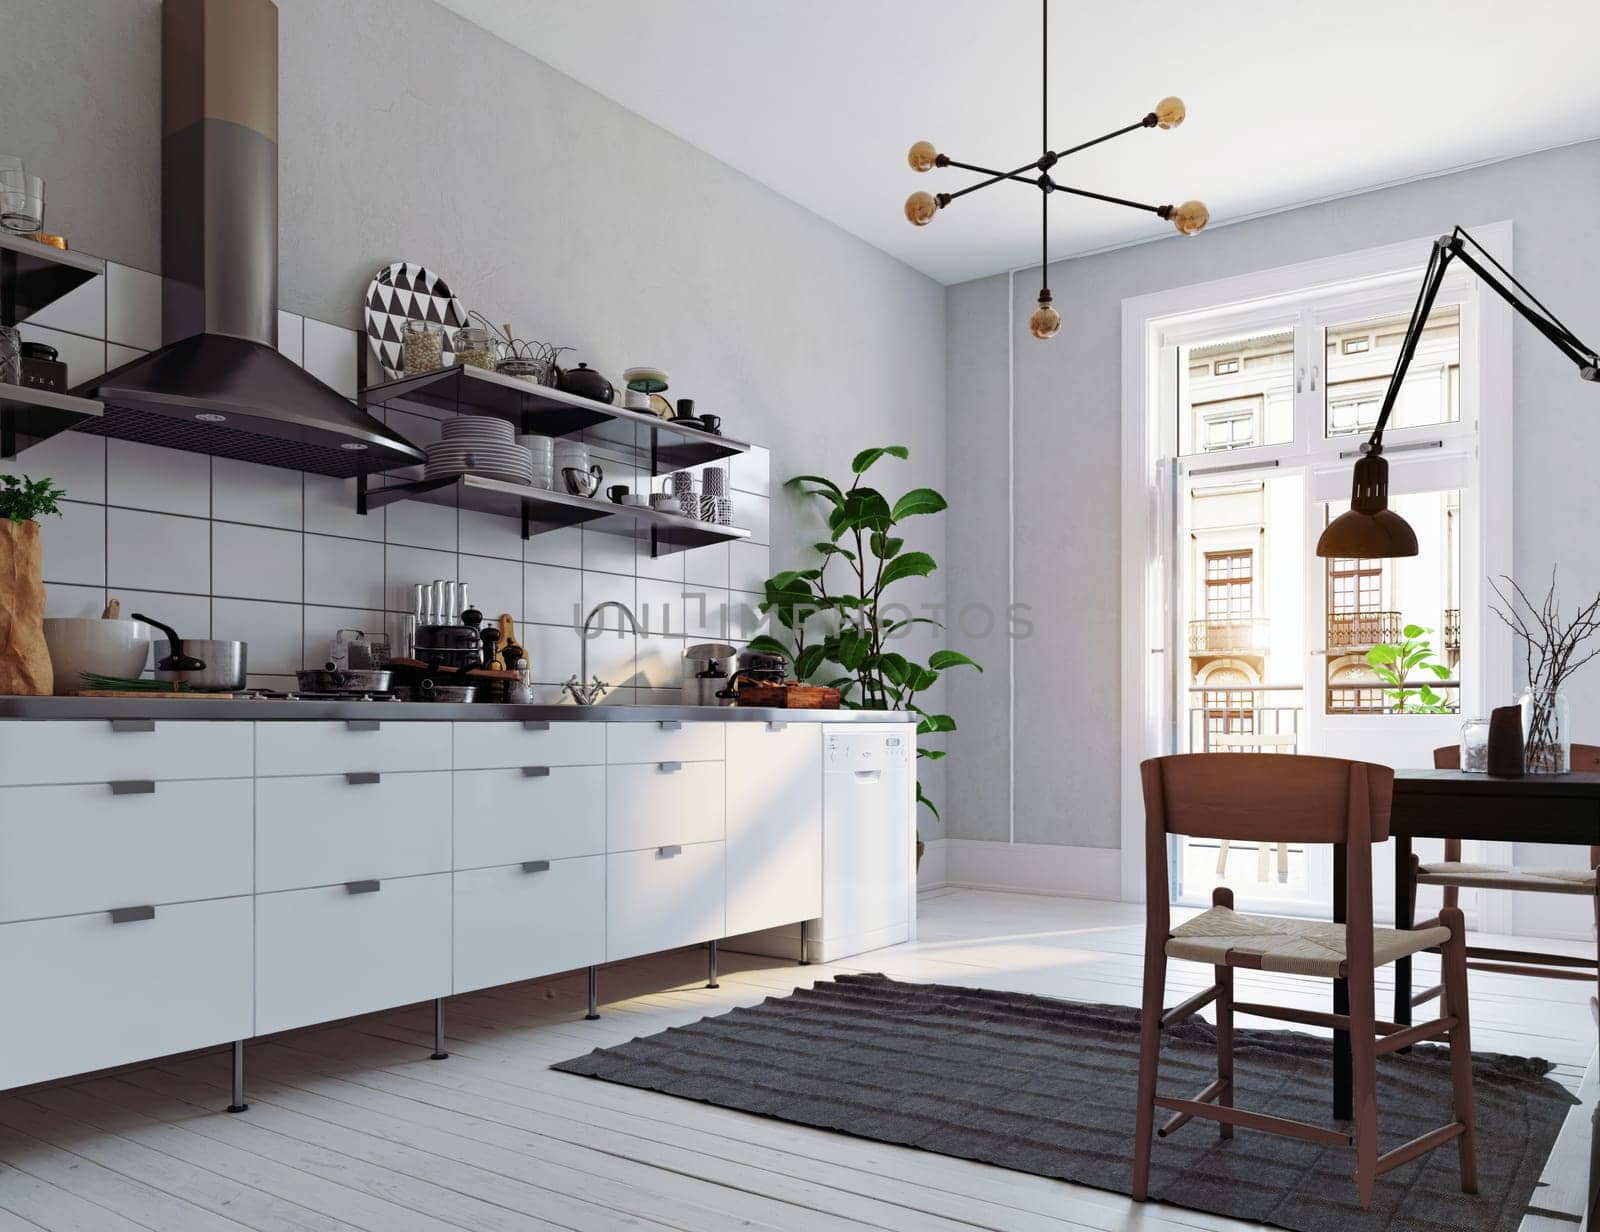 modern scandinavian style kitchen interior. 3d rendering design